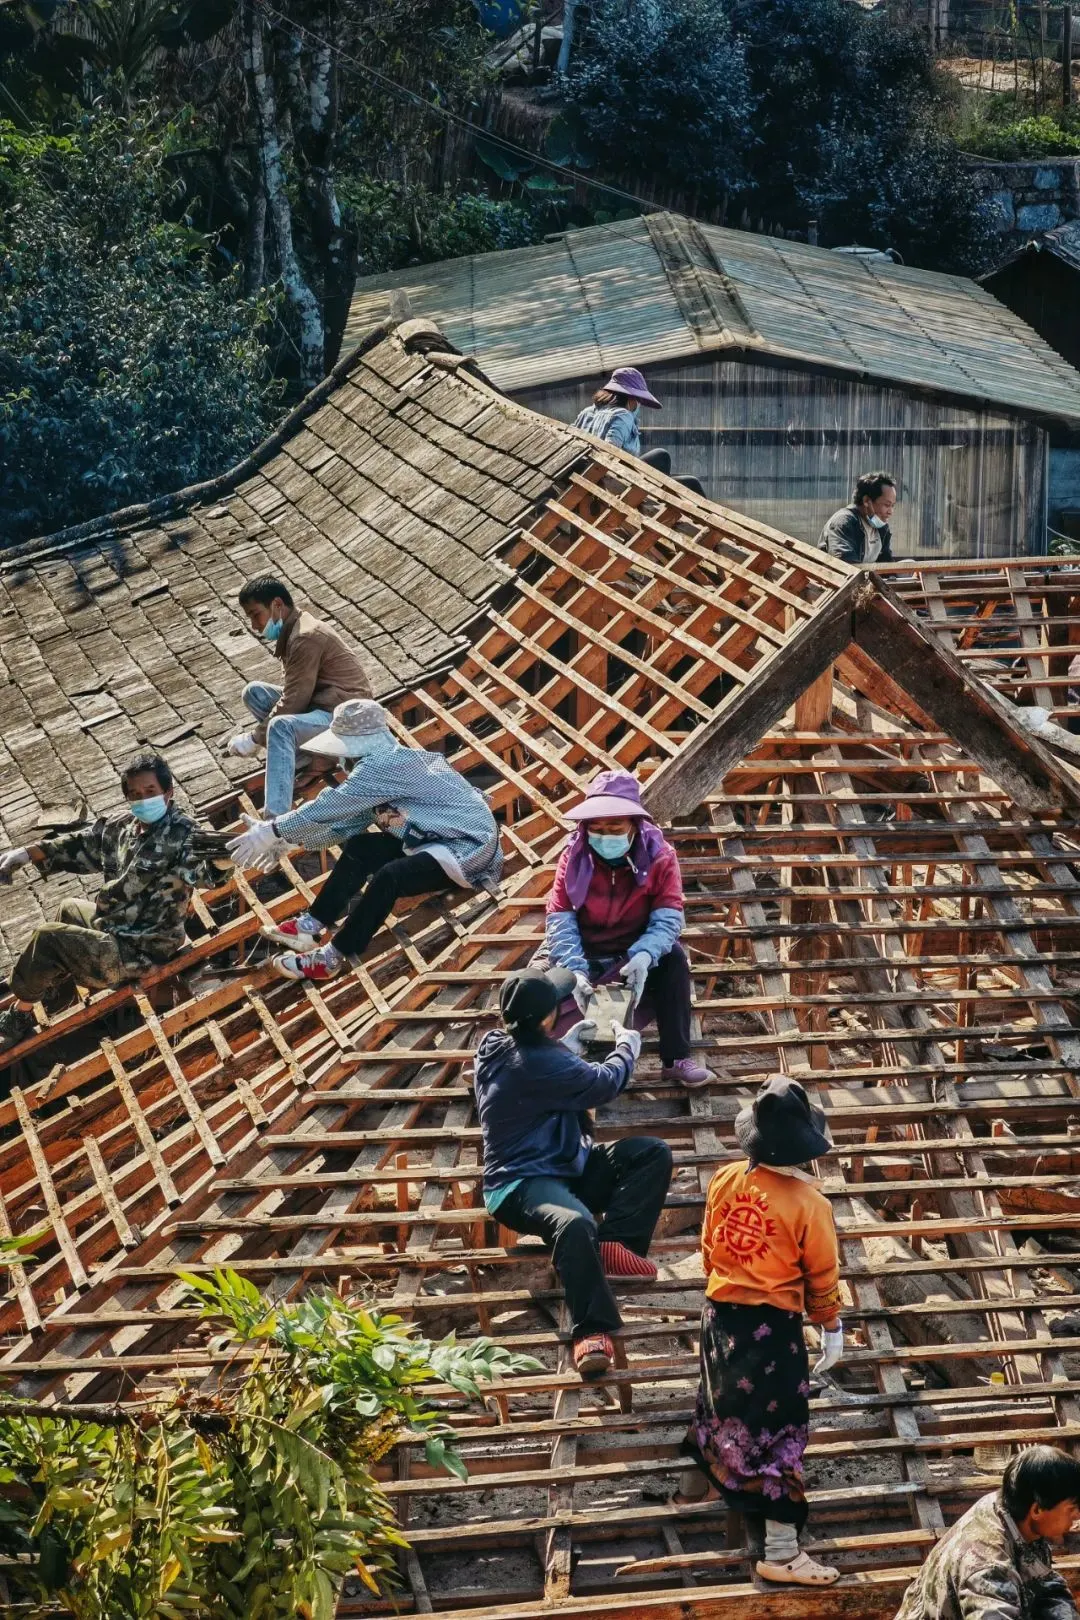 景迈山人正在按照传统技术搭建房屋 摄影/社长的旅行日常